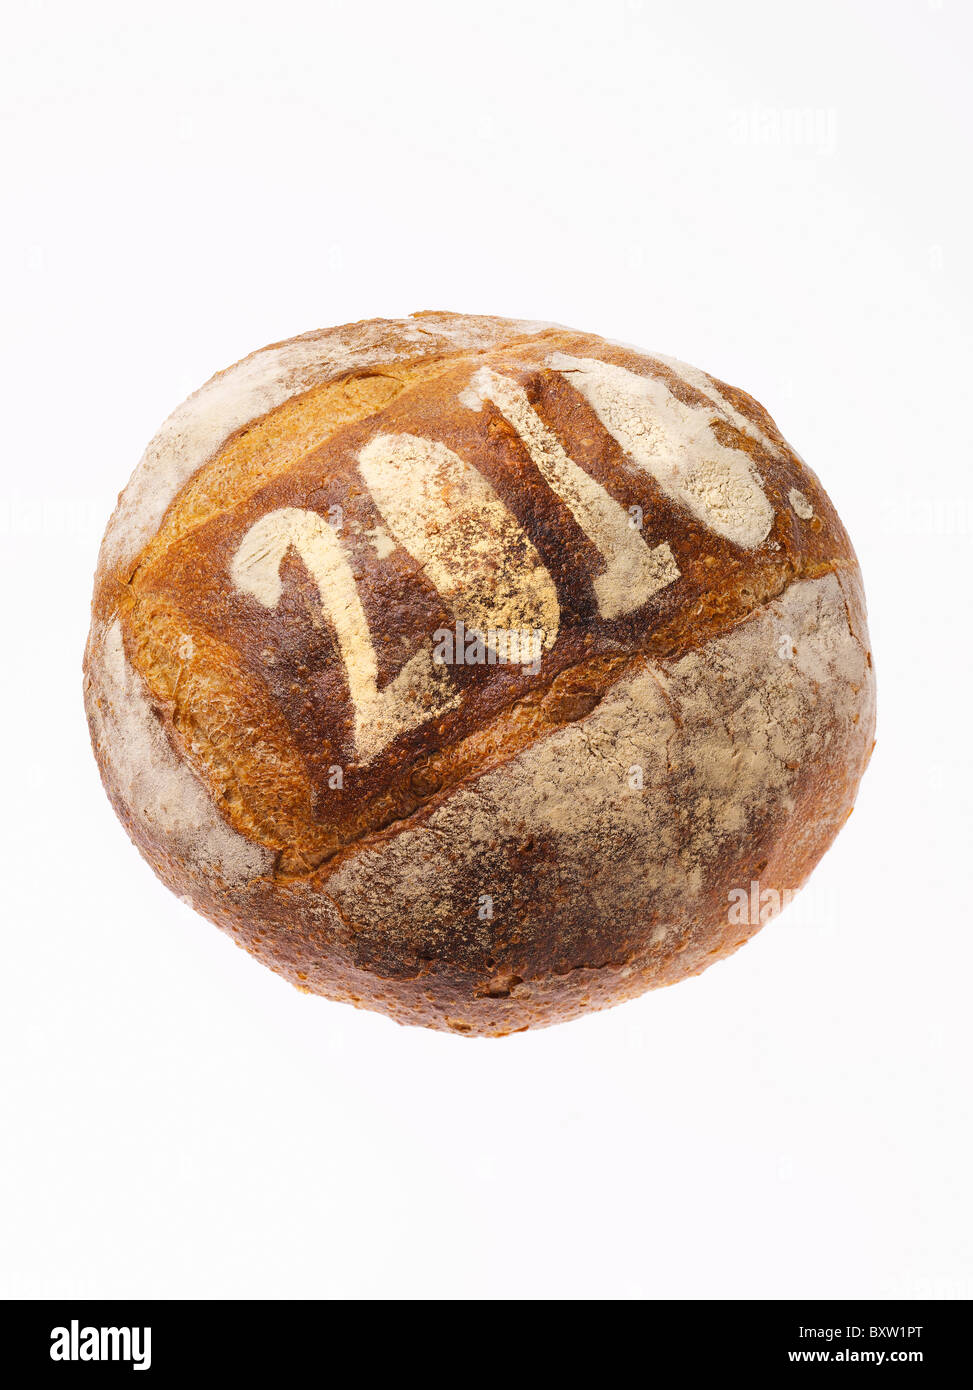 Miche de pain rond saupoudrés de l'année 2010 Banque D'Images